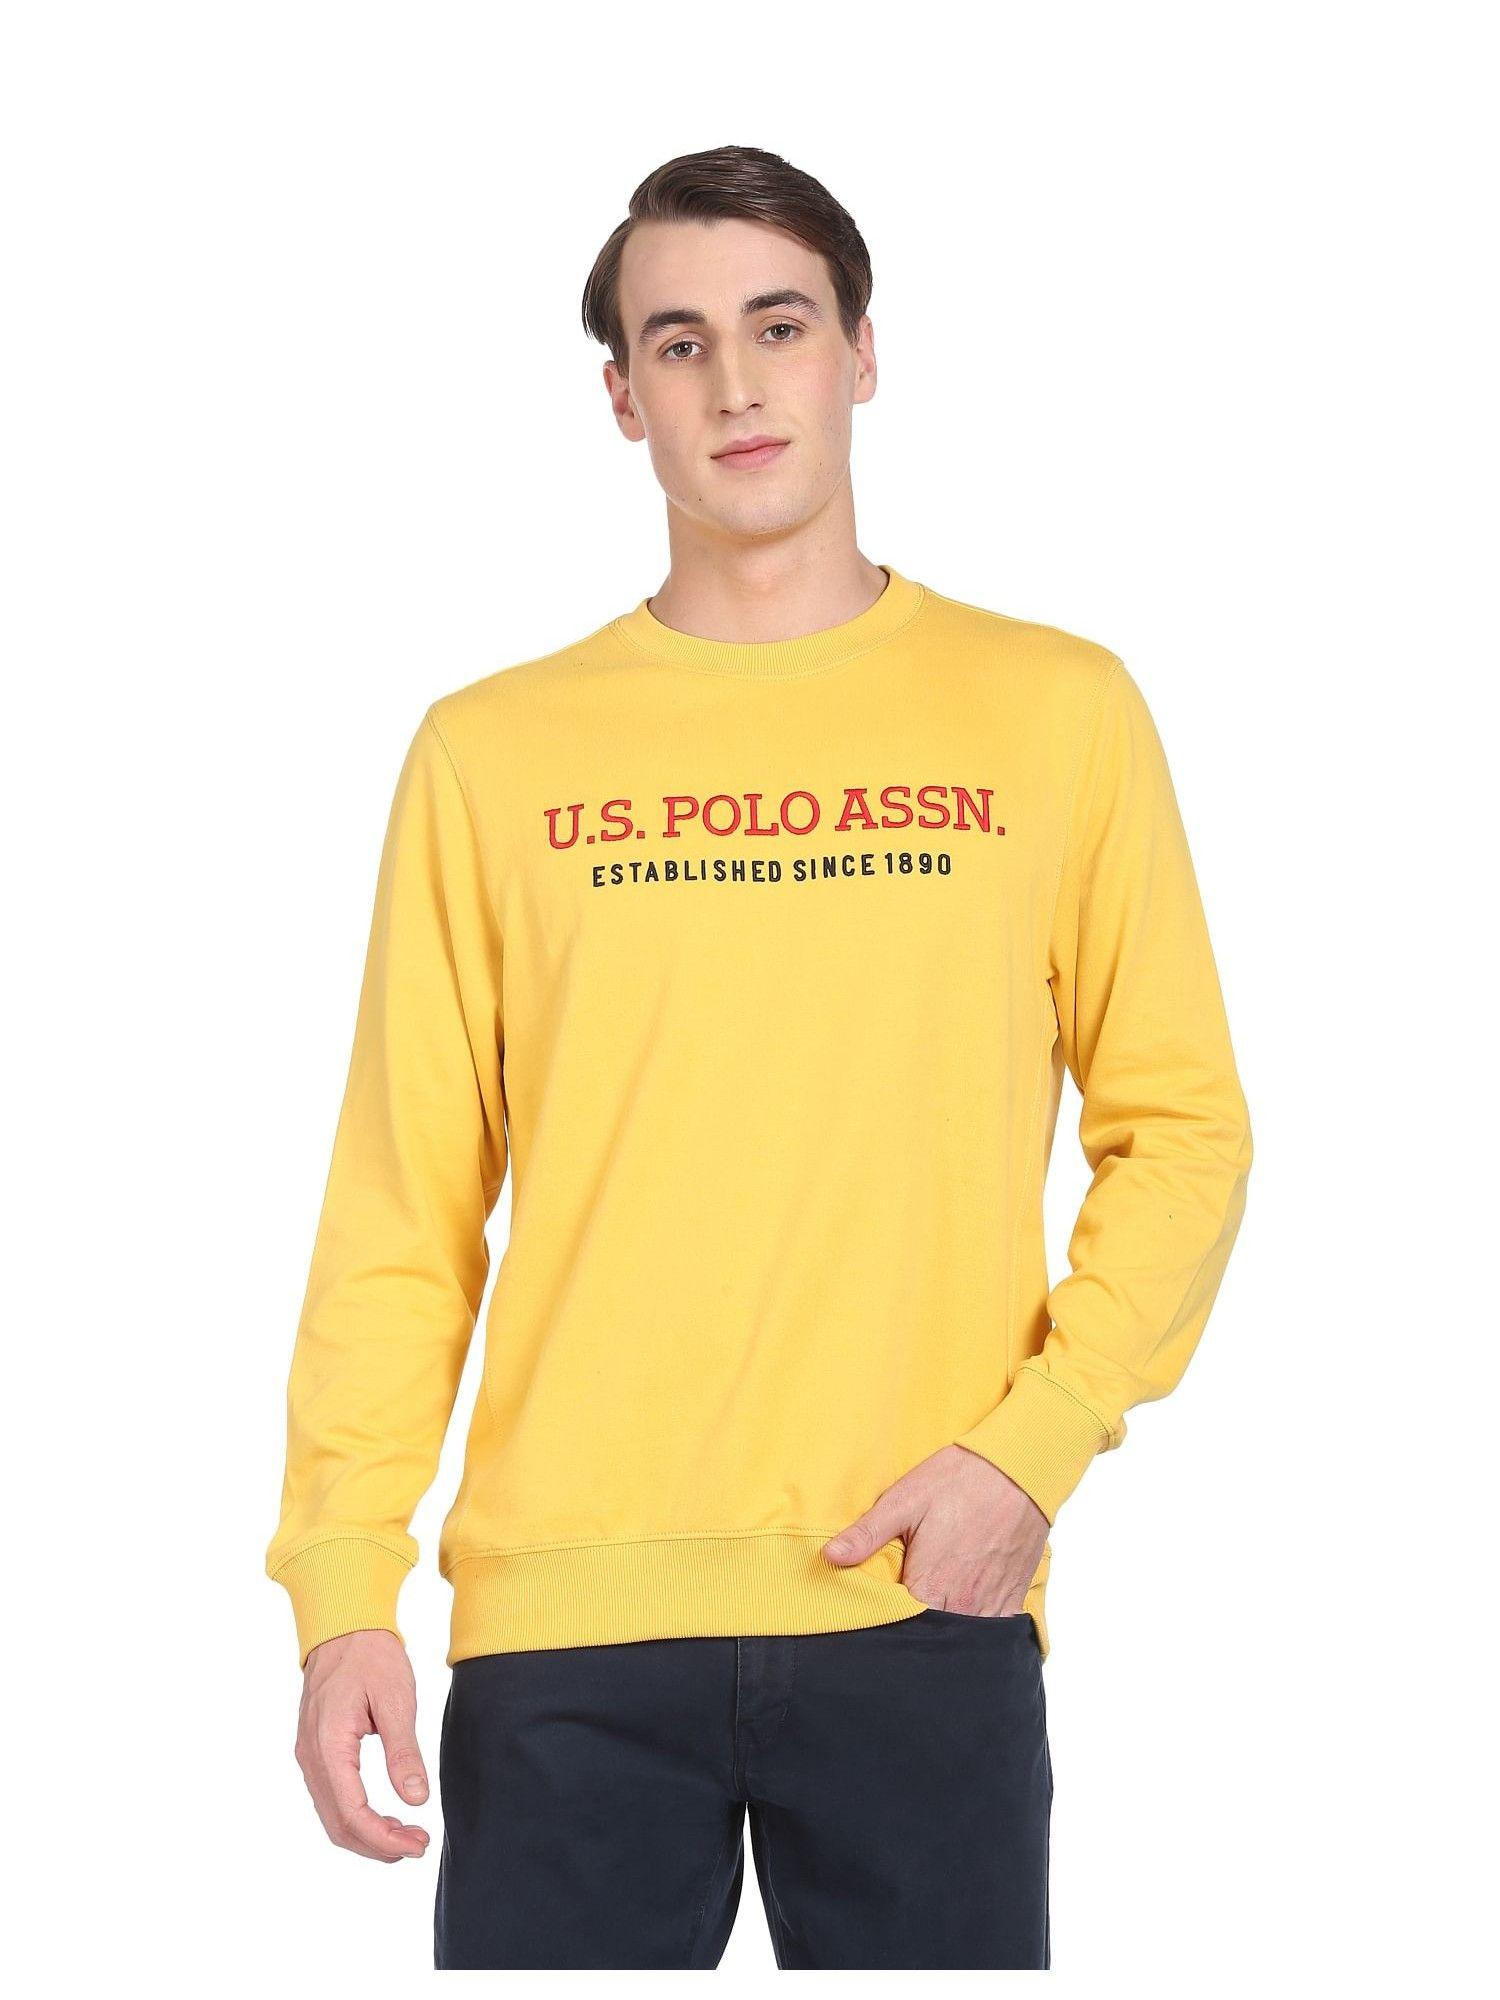 men yellow contrast crew neck sweatshirt